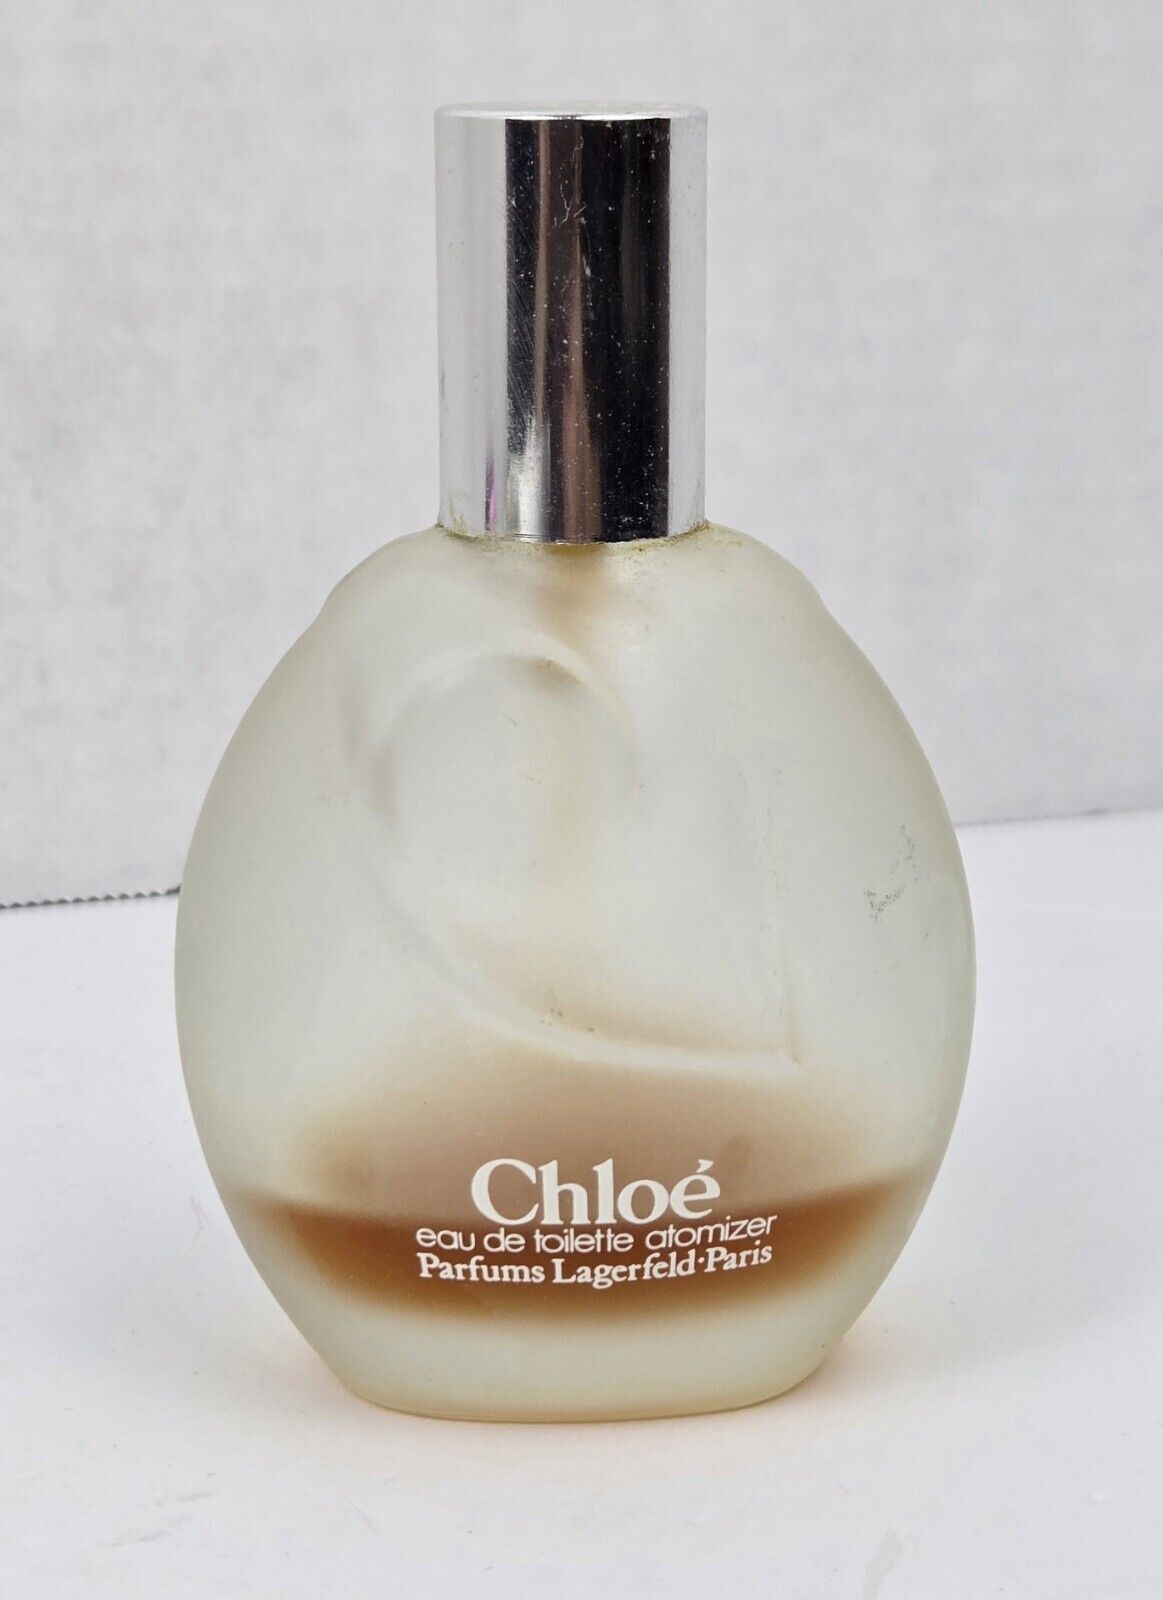 Chloe by Parfums Lagerfeld For Women 3 oz Eau de Toilette Spray Vintage 20% Full